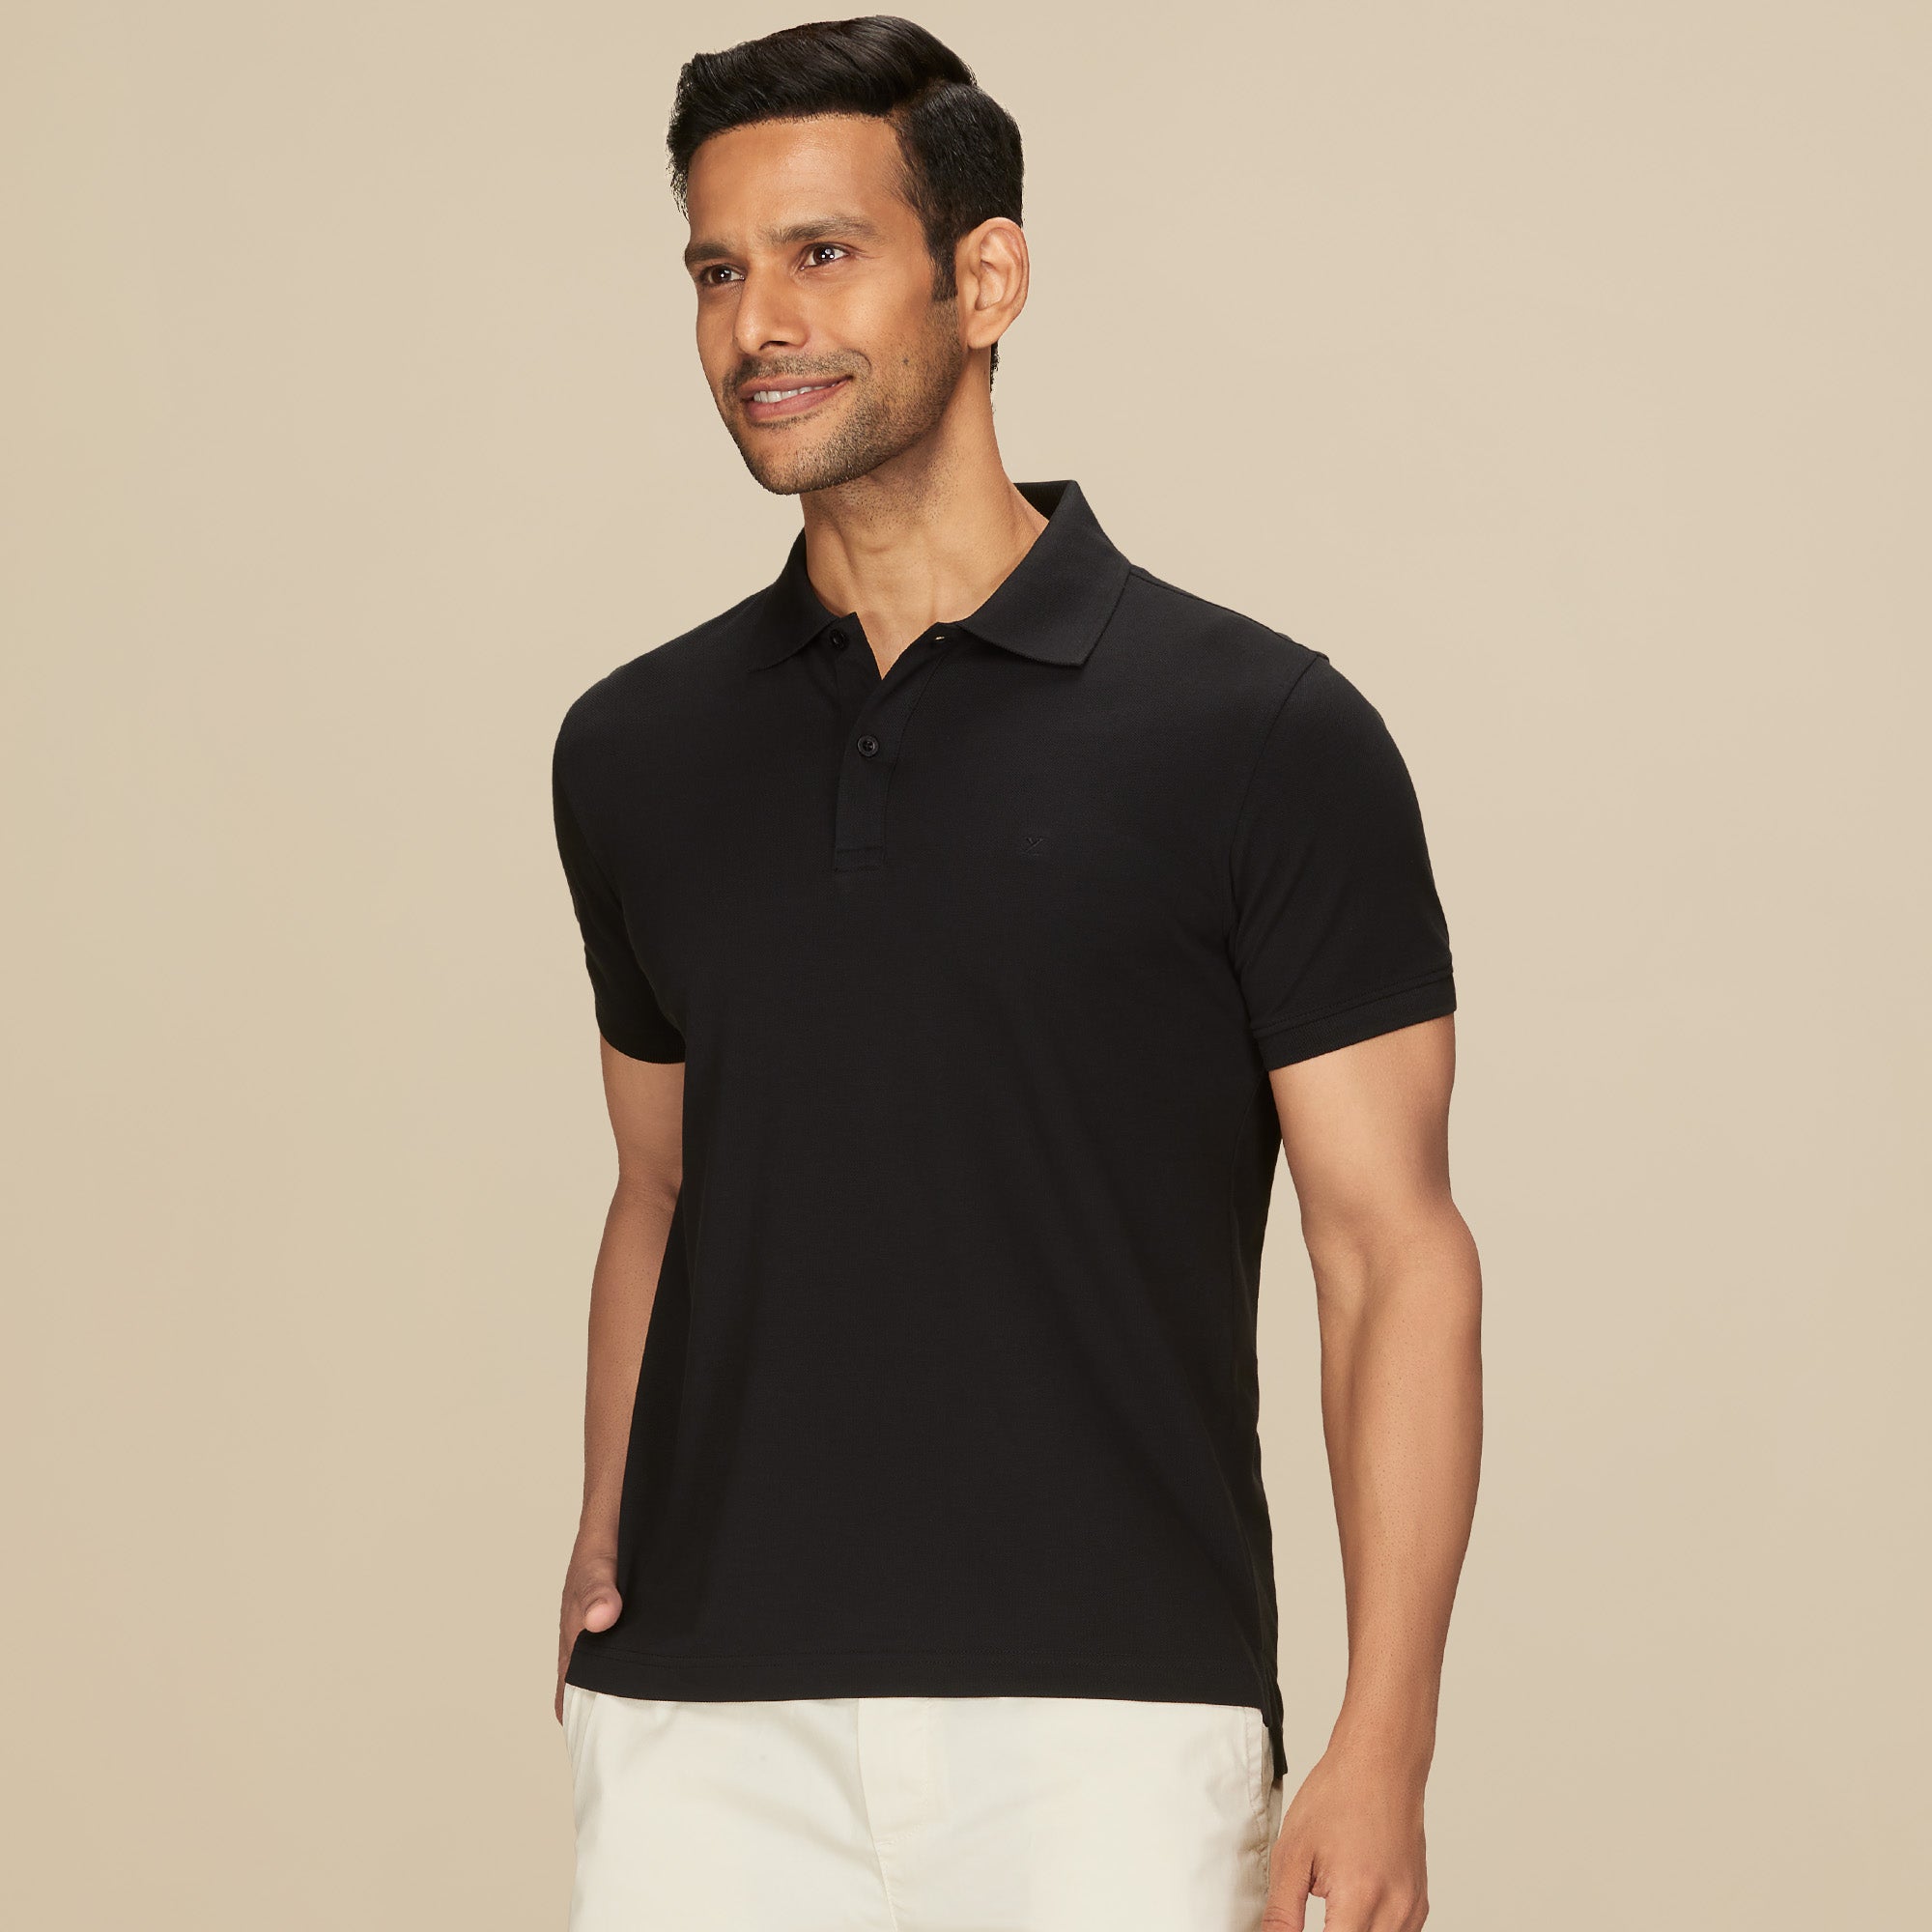 XYXX-Nova Combed Cotton Polo T-shirts Pitch Black-S